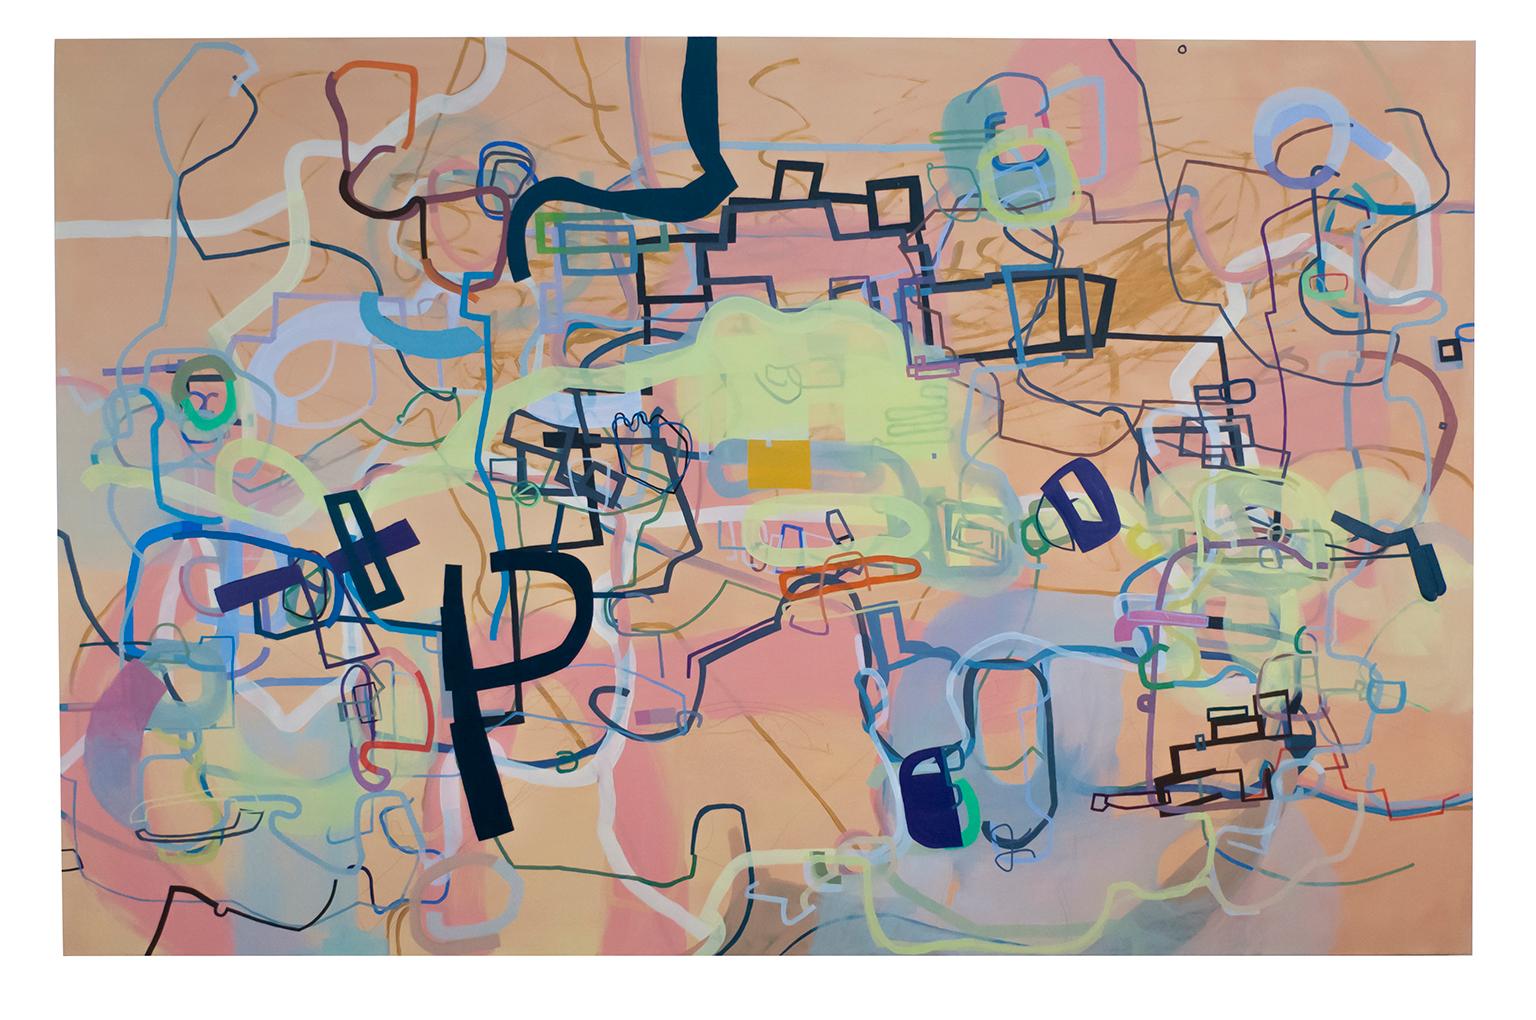 ""Eine Geschichte der Welt in sechs einfachen Installationen", großformatiges abstraktes Gemälde